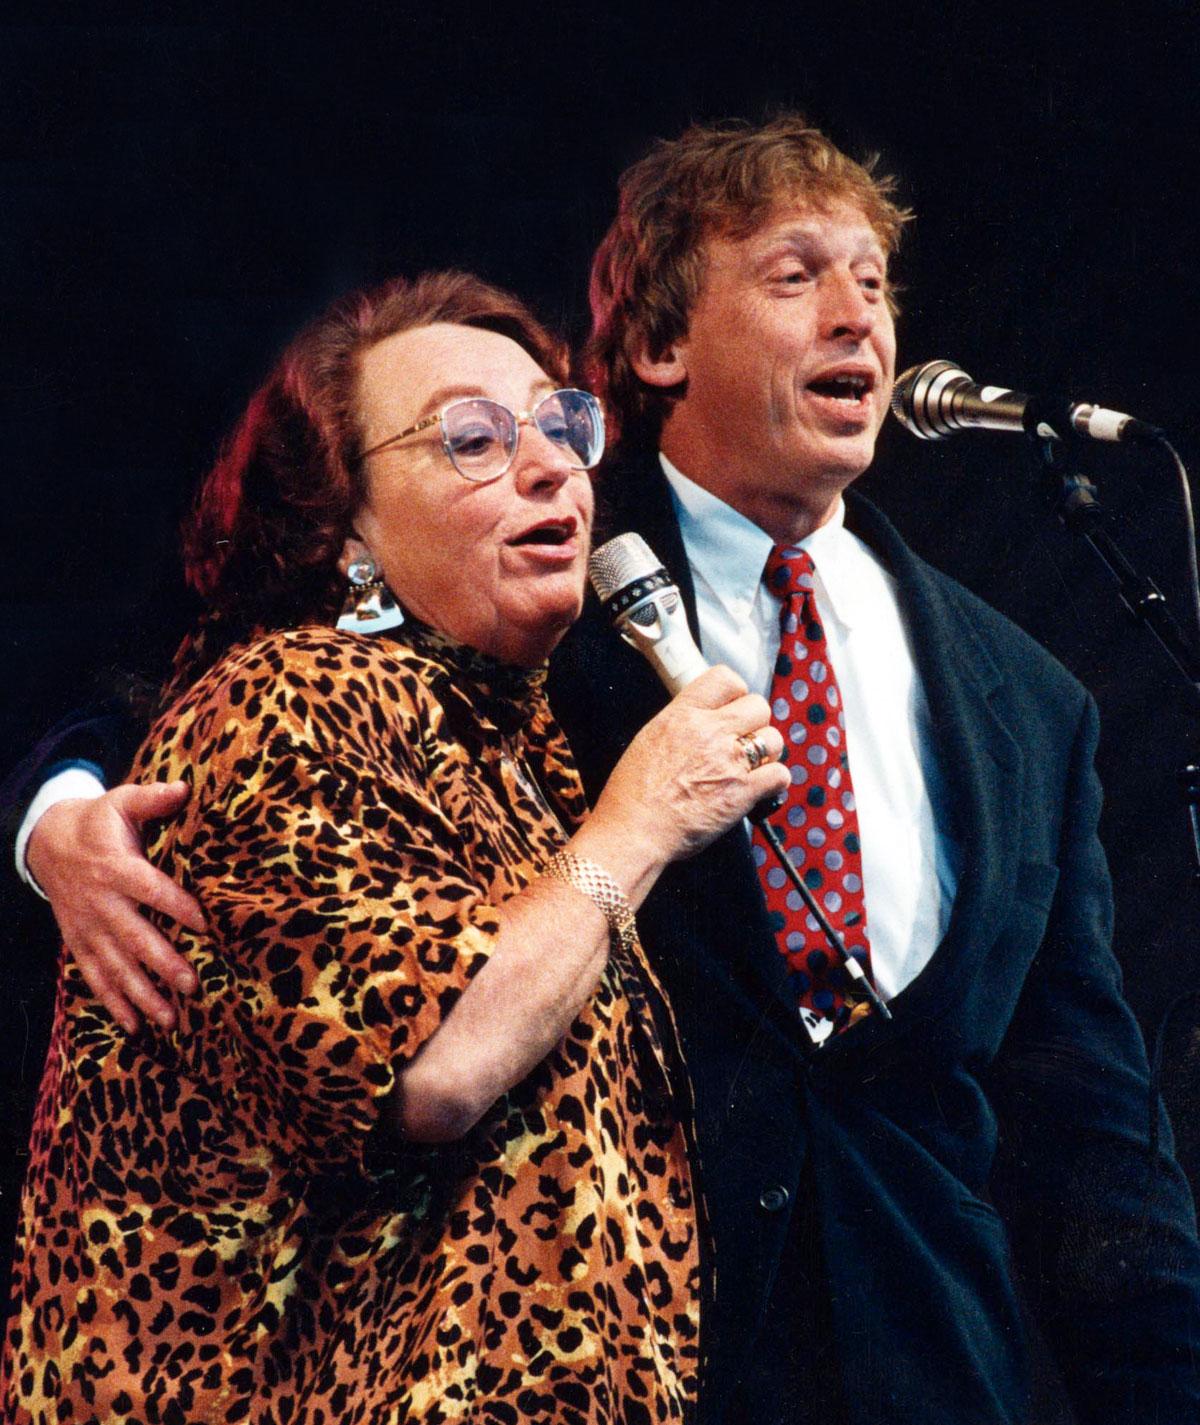 Sonya hedenbratt och Tomas von Brömssen 1993.